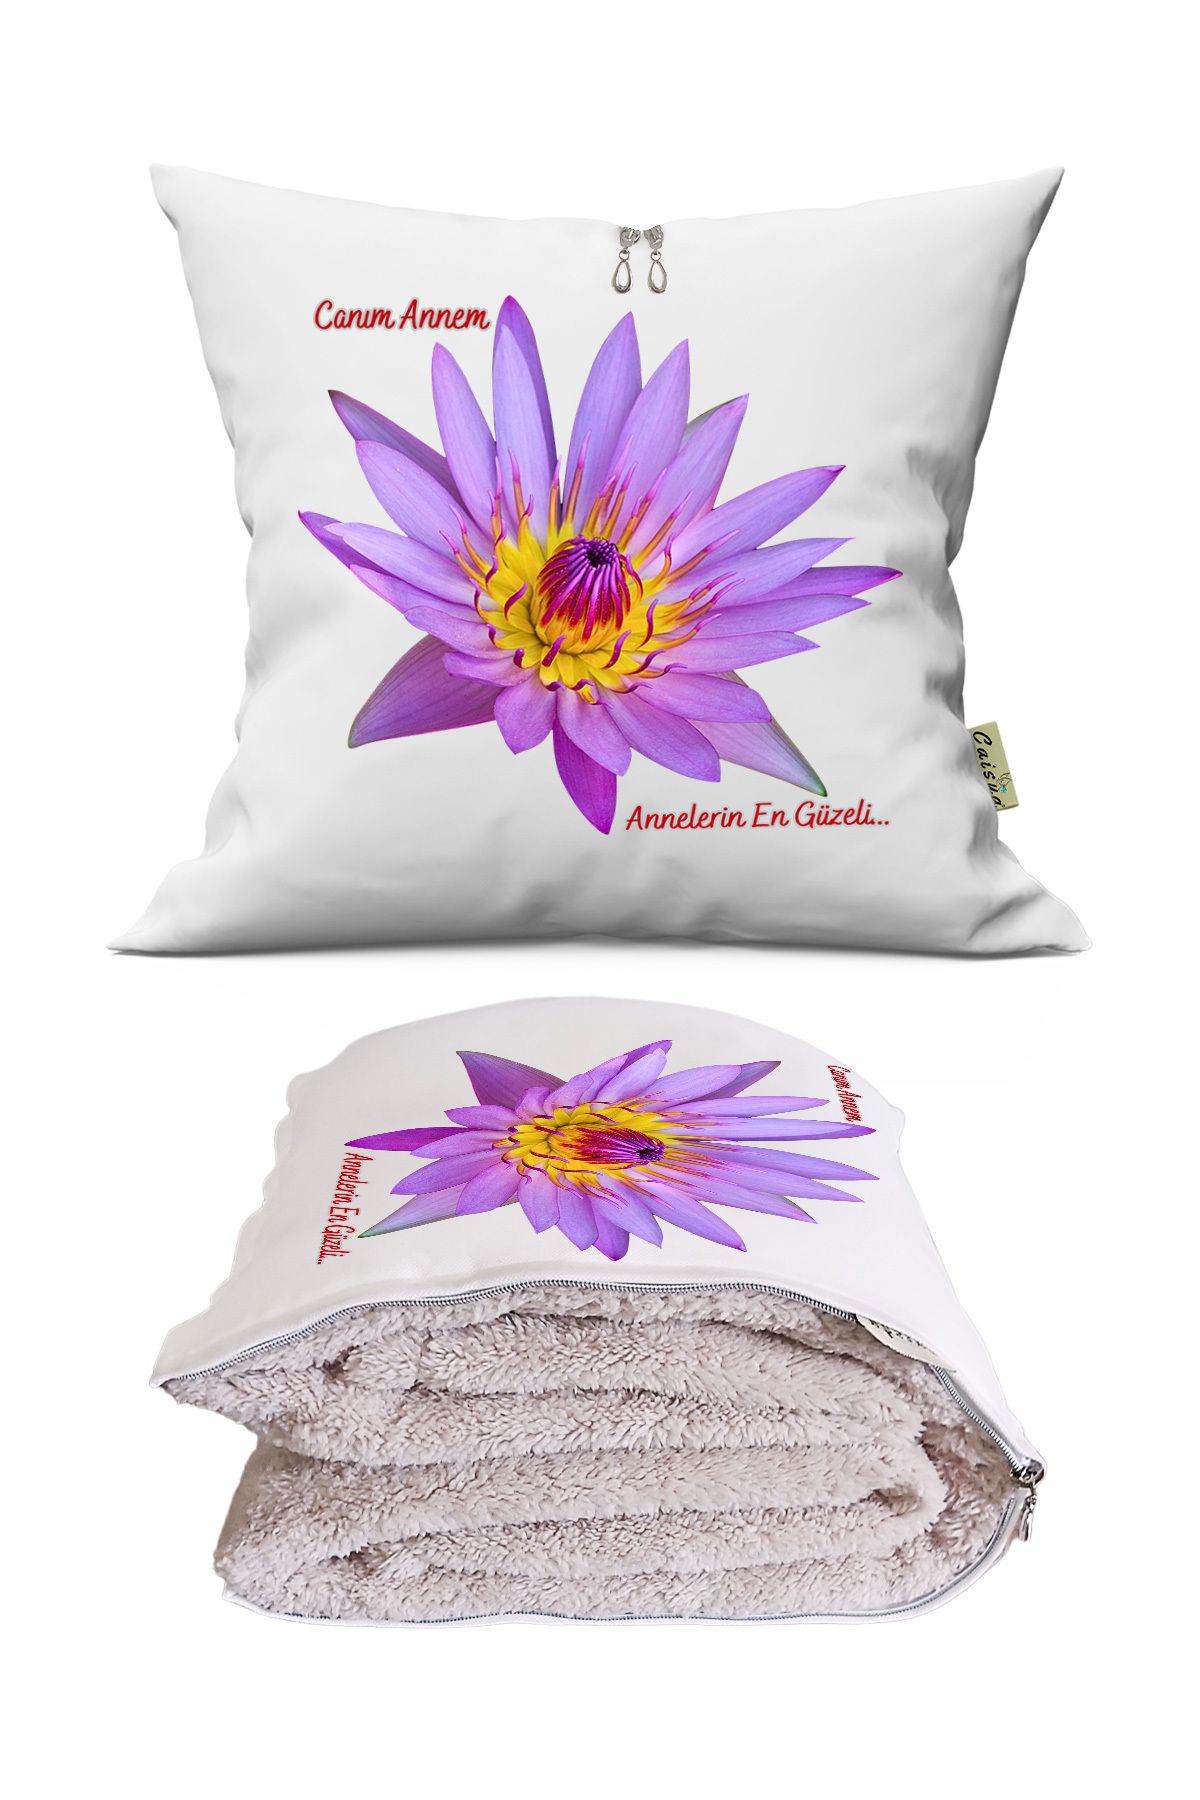 Genel Markalar Anneler Günü Hediyesi Lotus Çiçeği Tv Battaniyeli Opsiyonel Dekoratif Kırlent Yastık